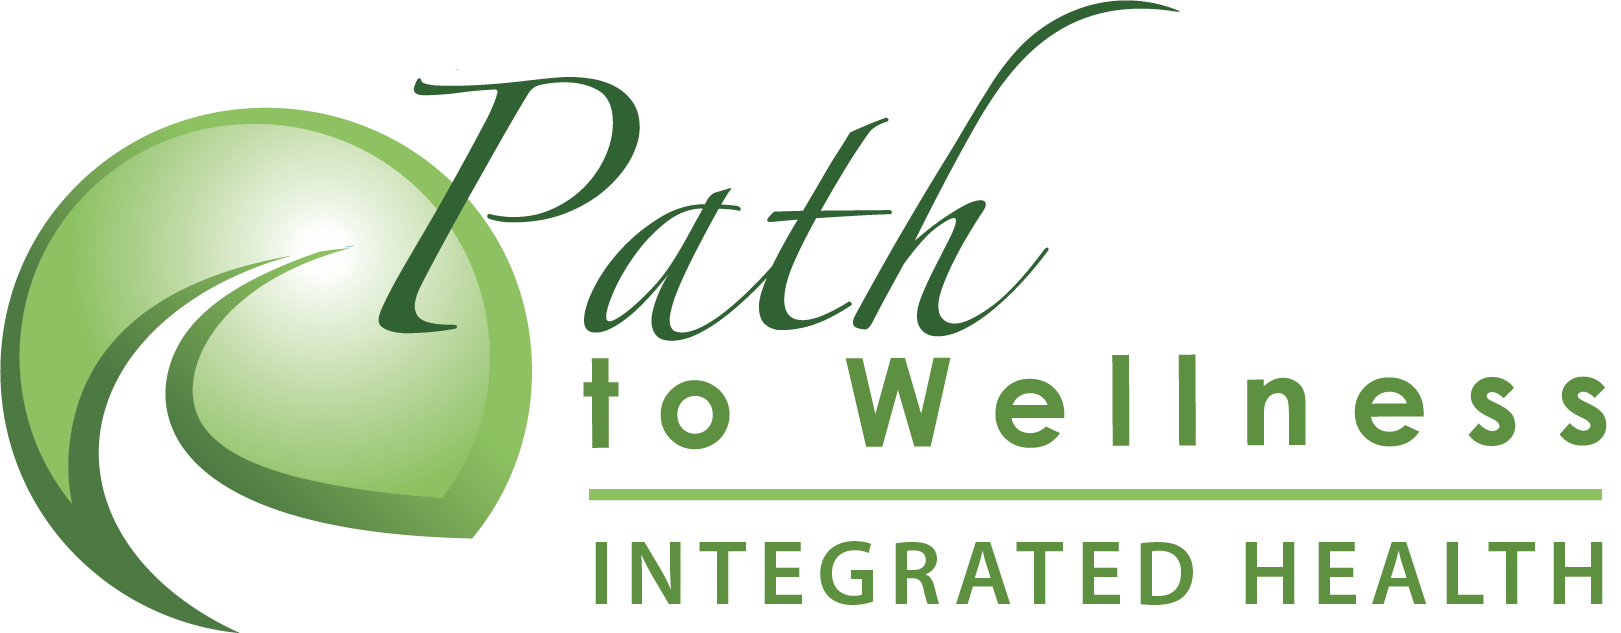 Wellness pathway